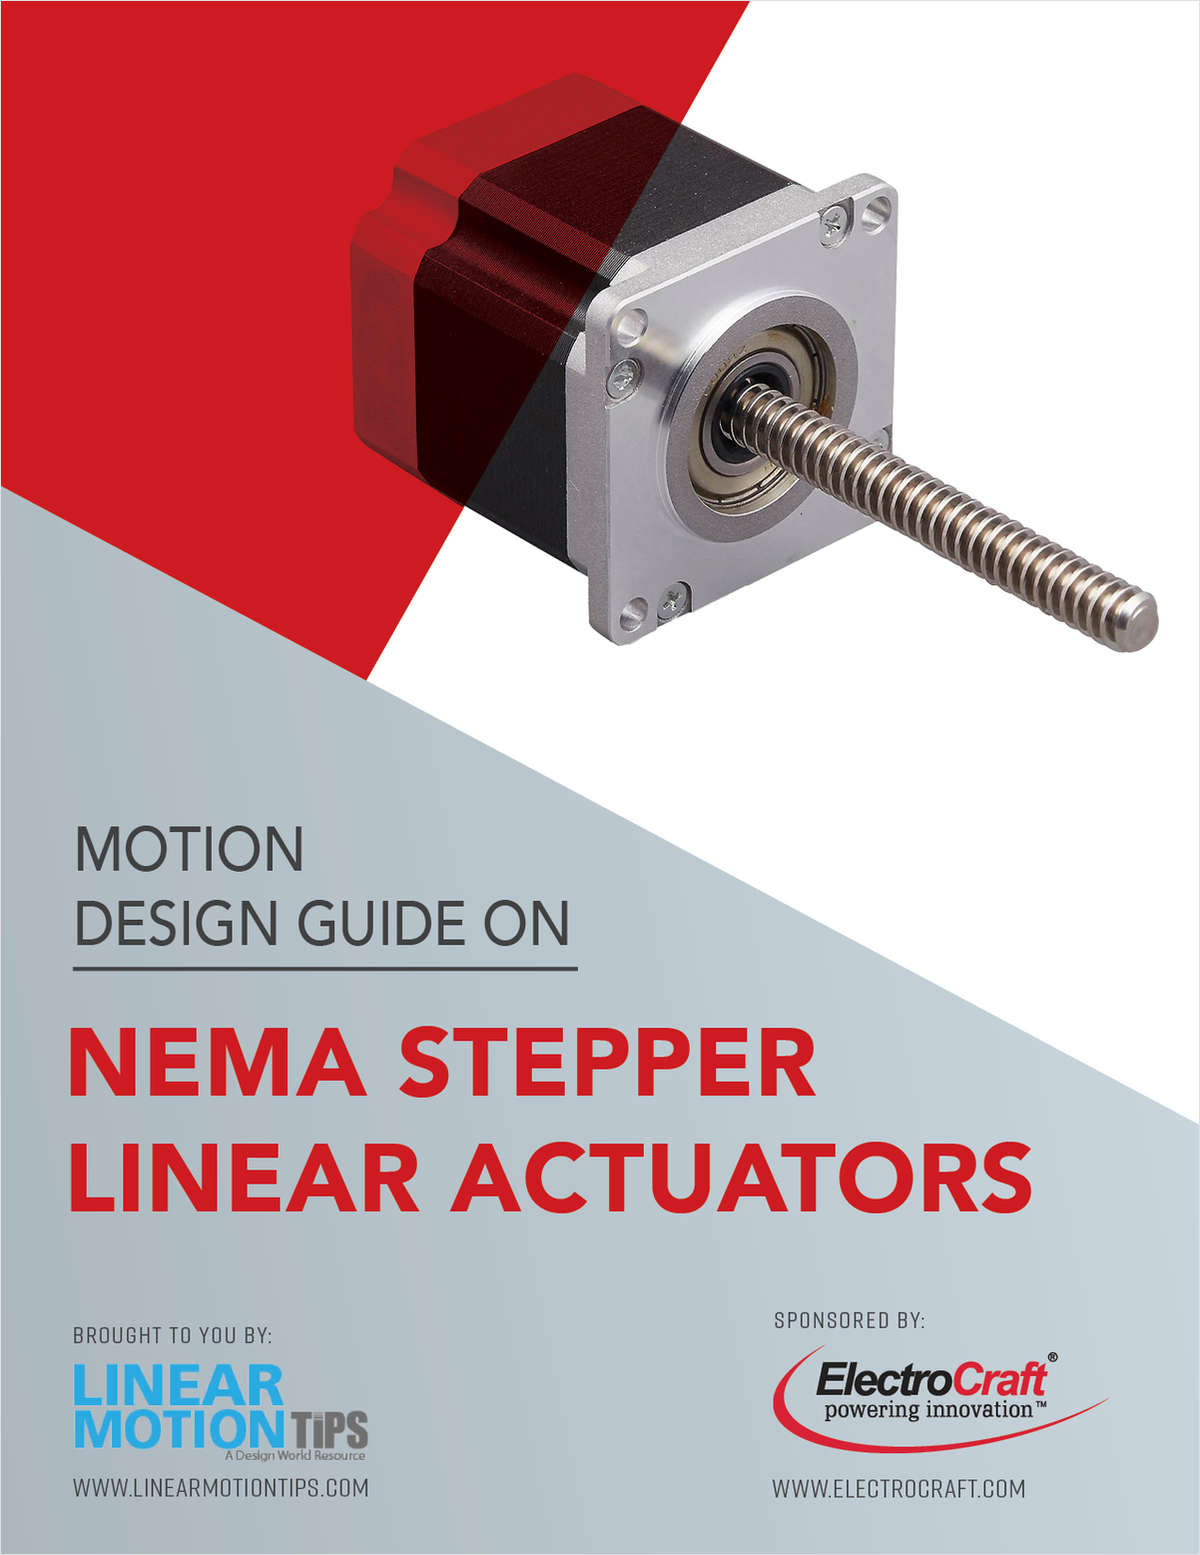 Motion Design Guide on Nema Stepper Linear Actuators